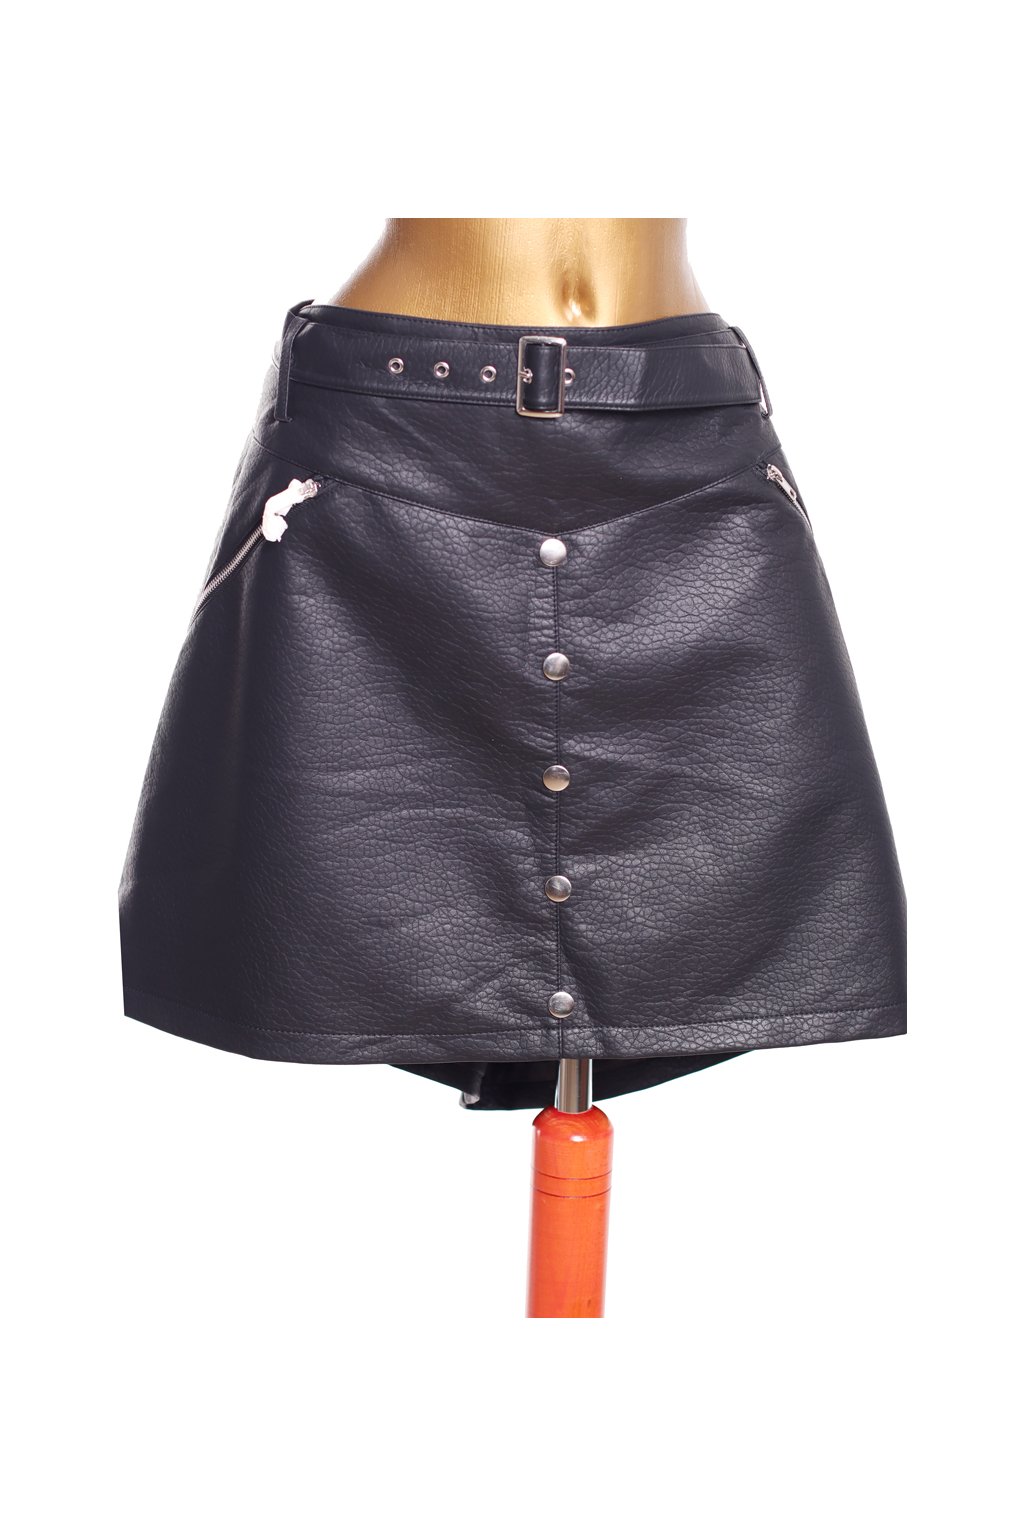 Dámská černá koženková sukně s páskem / ASOS / XXXXL (54) / ANGLIE